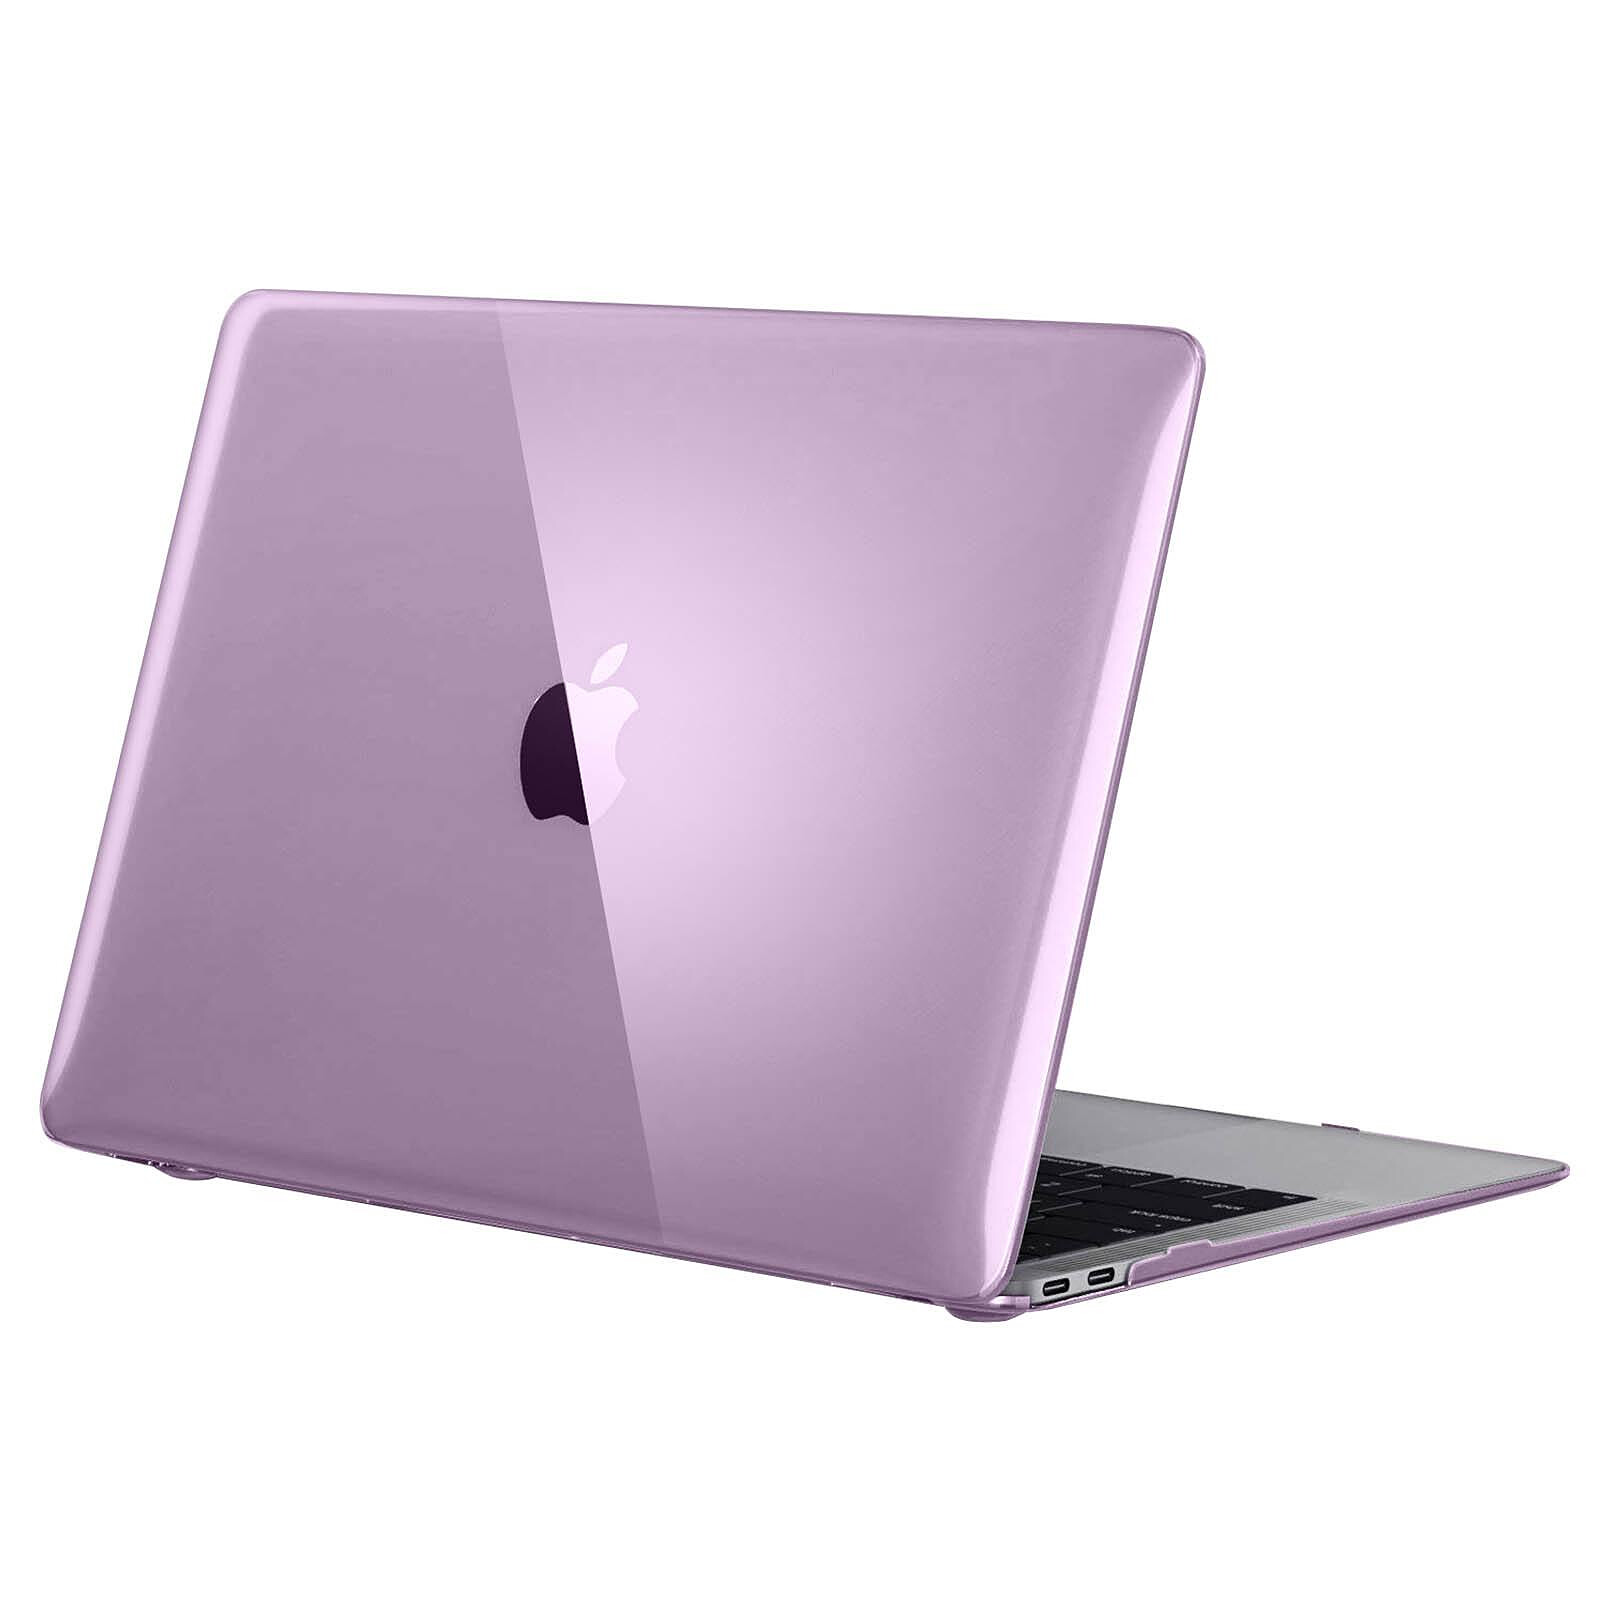 Coque MacBook Air 13 pouces [Modèles: A1466 -A1369] Rigide Housse